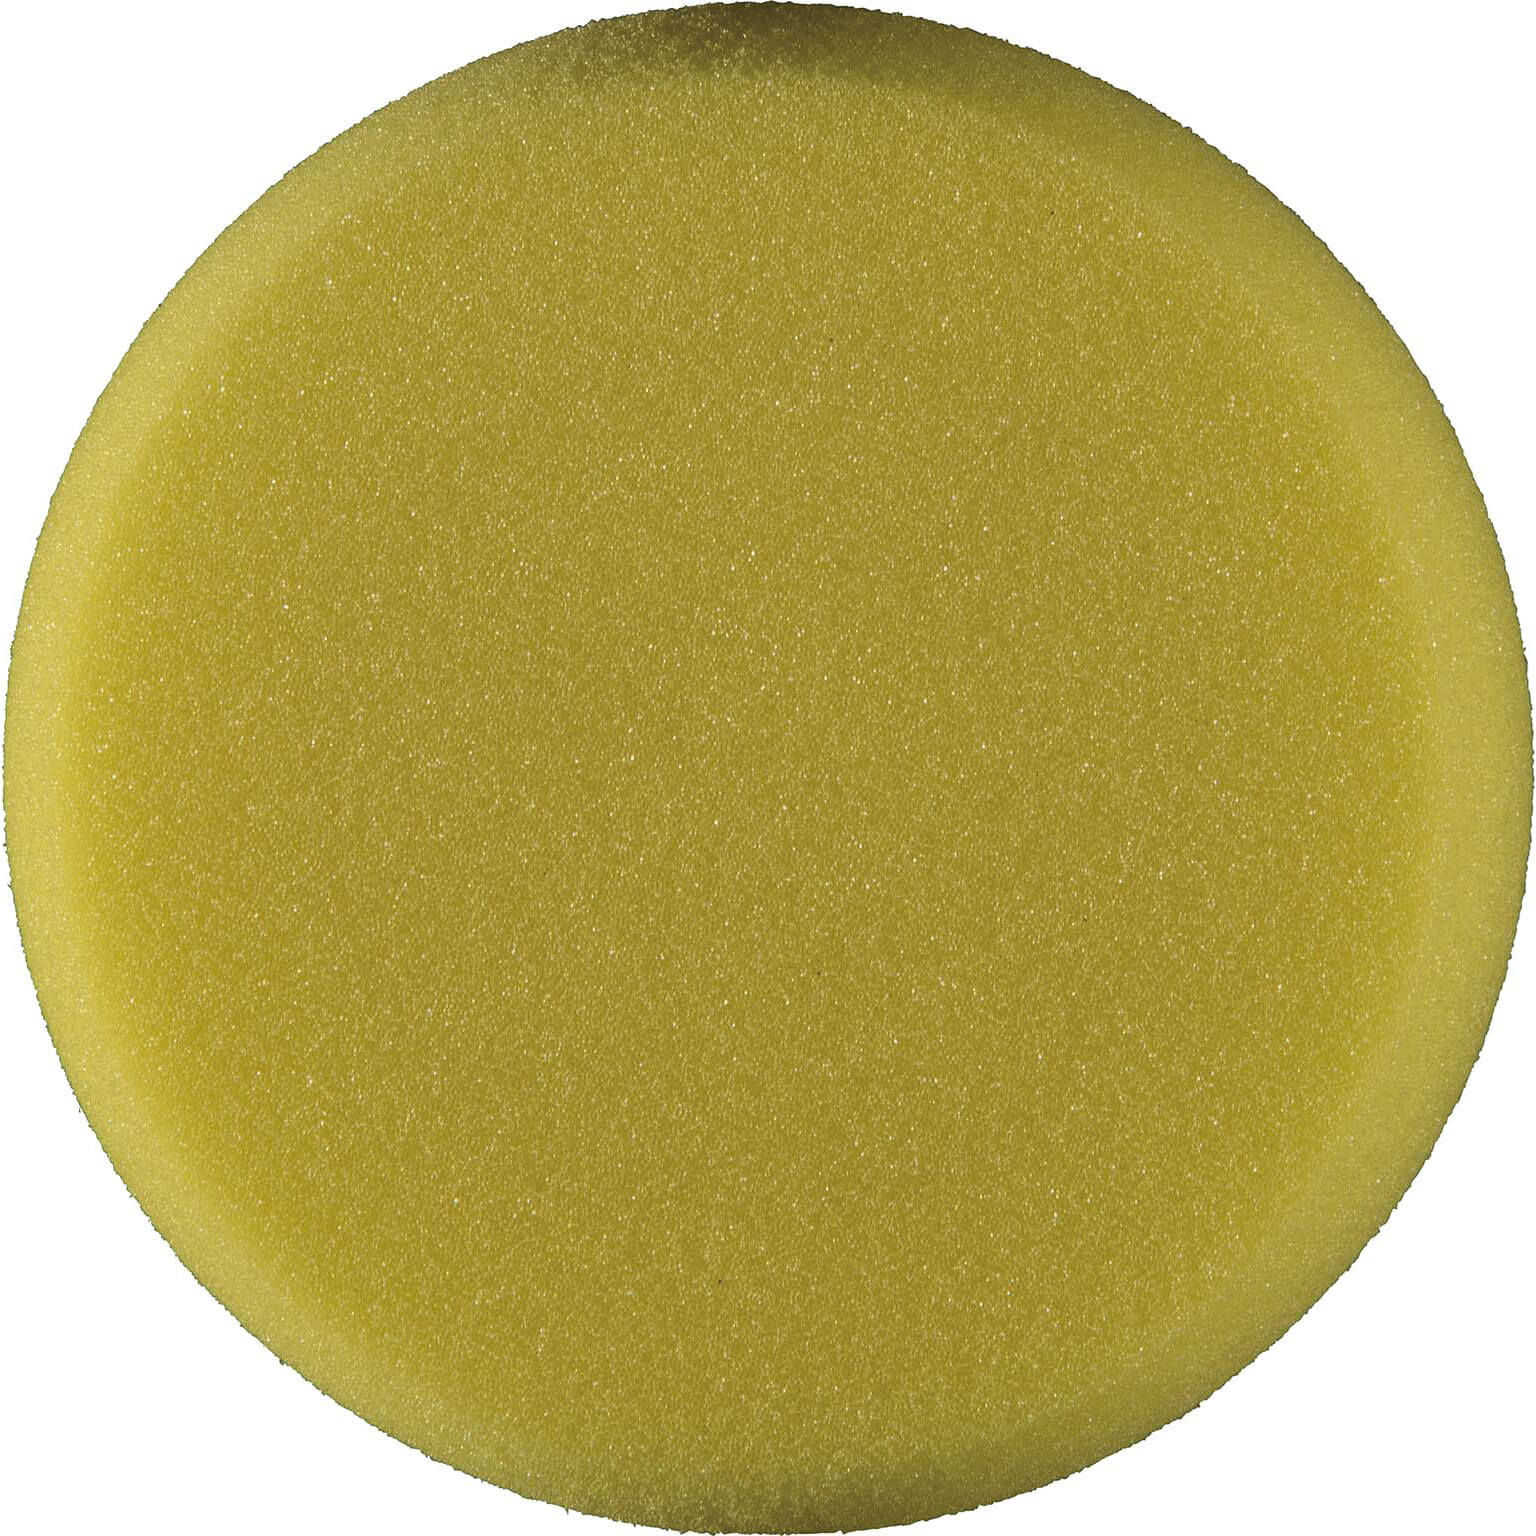 Image of Makita Yellow Polisher Sponge Pad 120mm